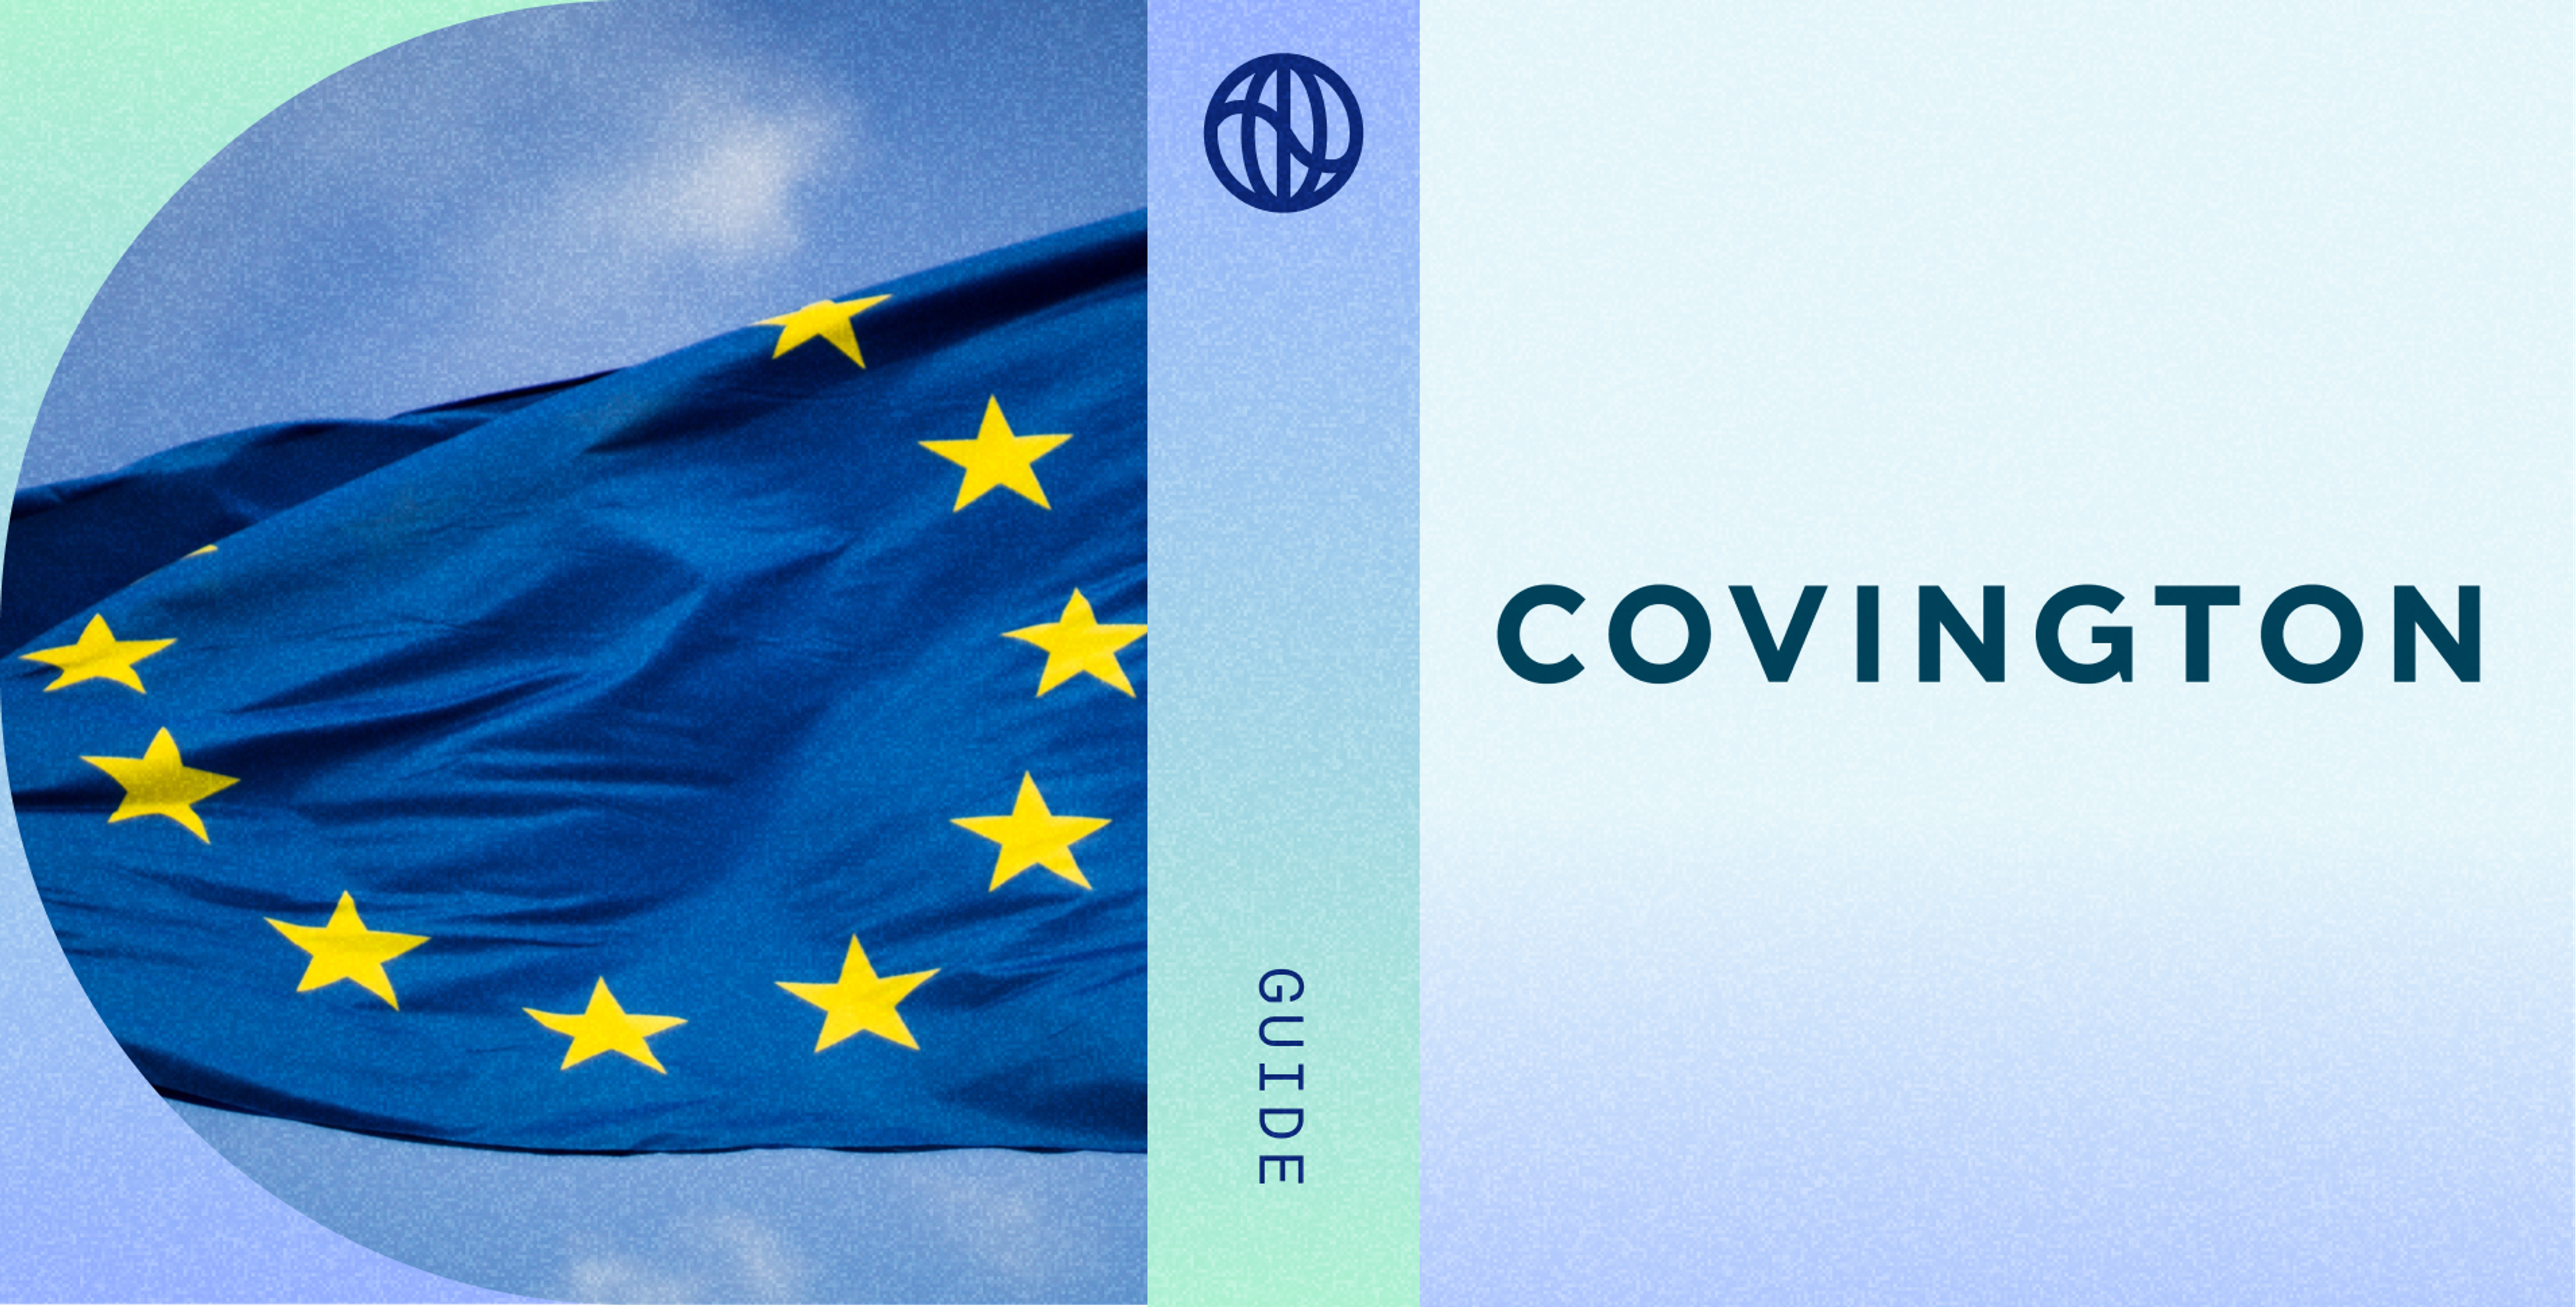 EU Flag plus Covington logo